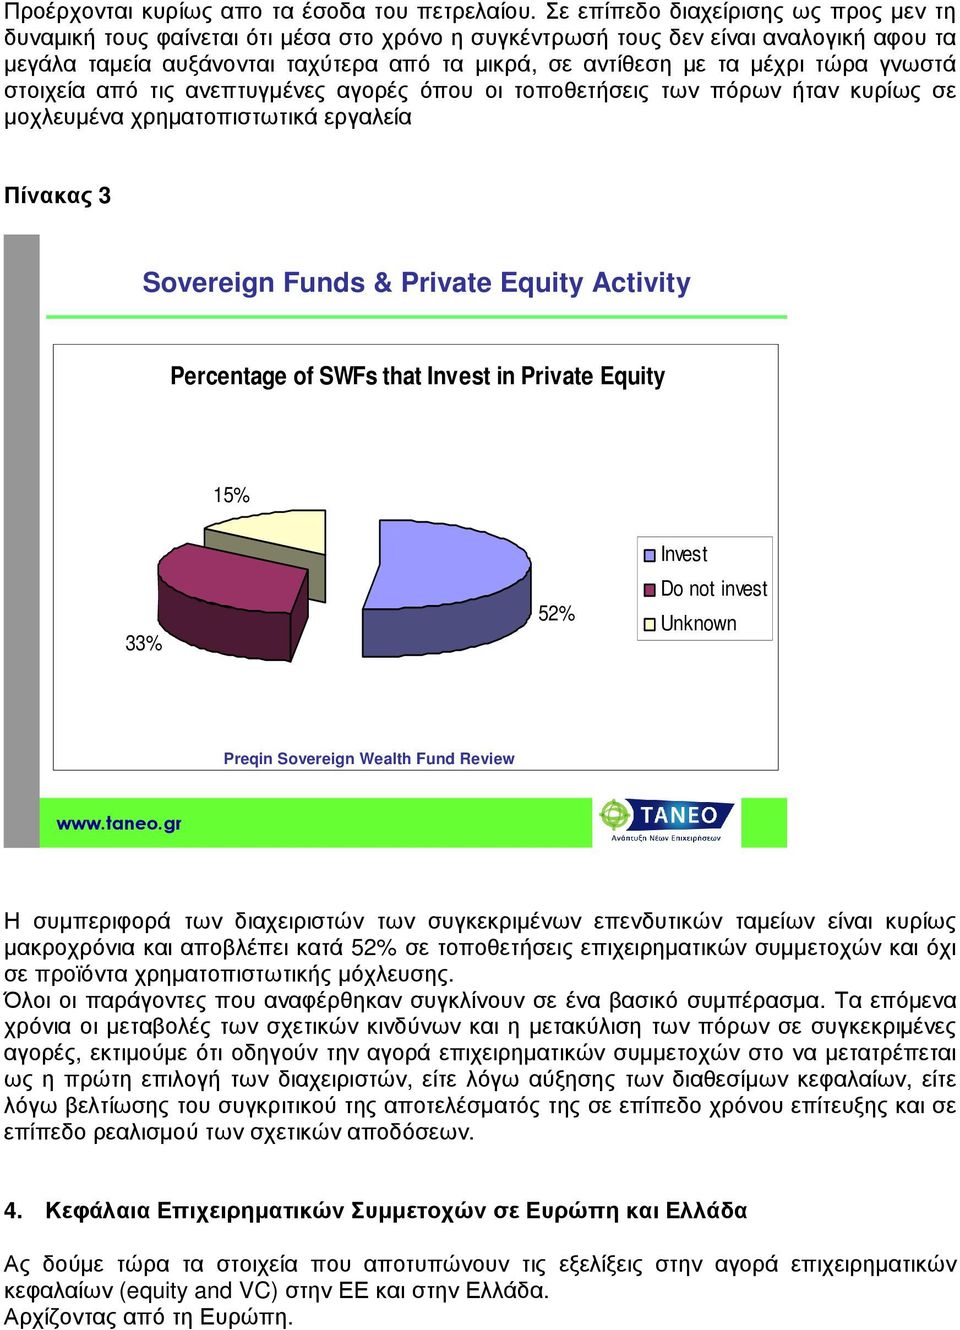 τώρα γνωστά στοιχεία από τις ανεπτυγµένες αγορές όπου οι τοποθετήσεις των πόρων ήταν κυρίως σε µοχλευµένα χρηµατοπιστωτικά εργαλεία Πίνακας 3 Sovereign Funds & Private Equity Activity Percentage of